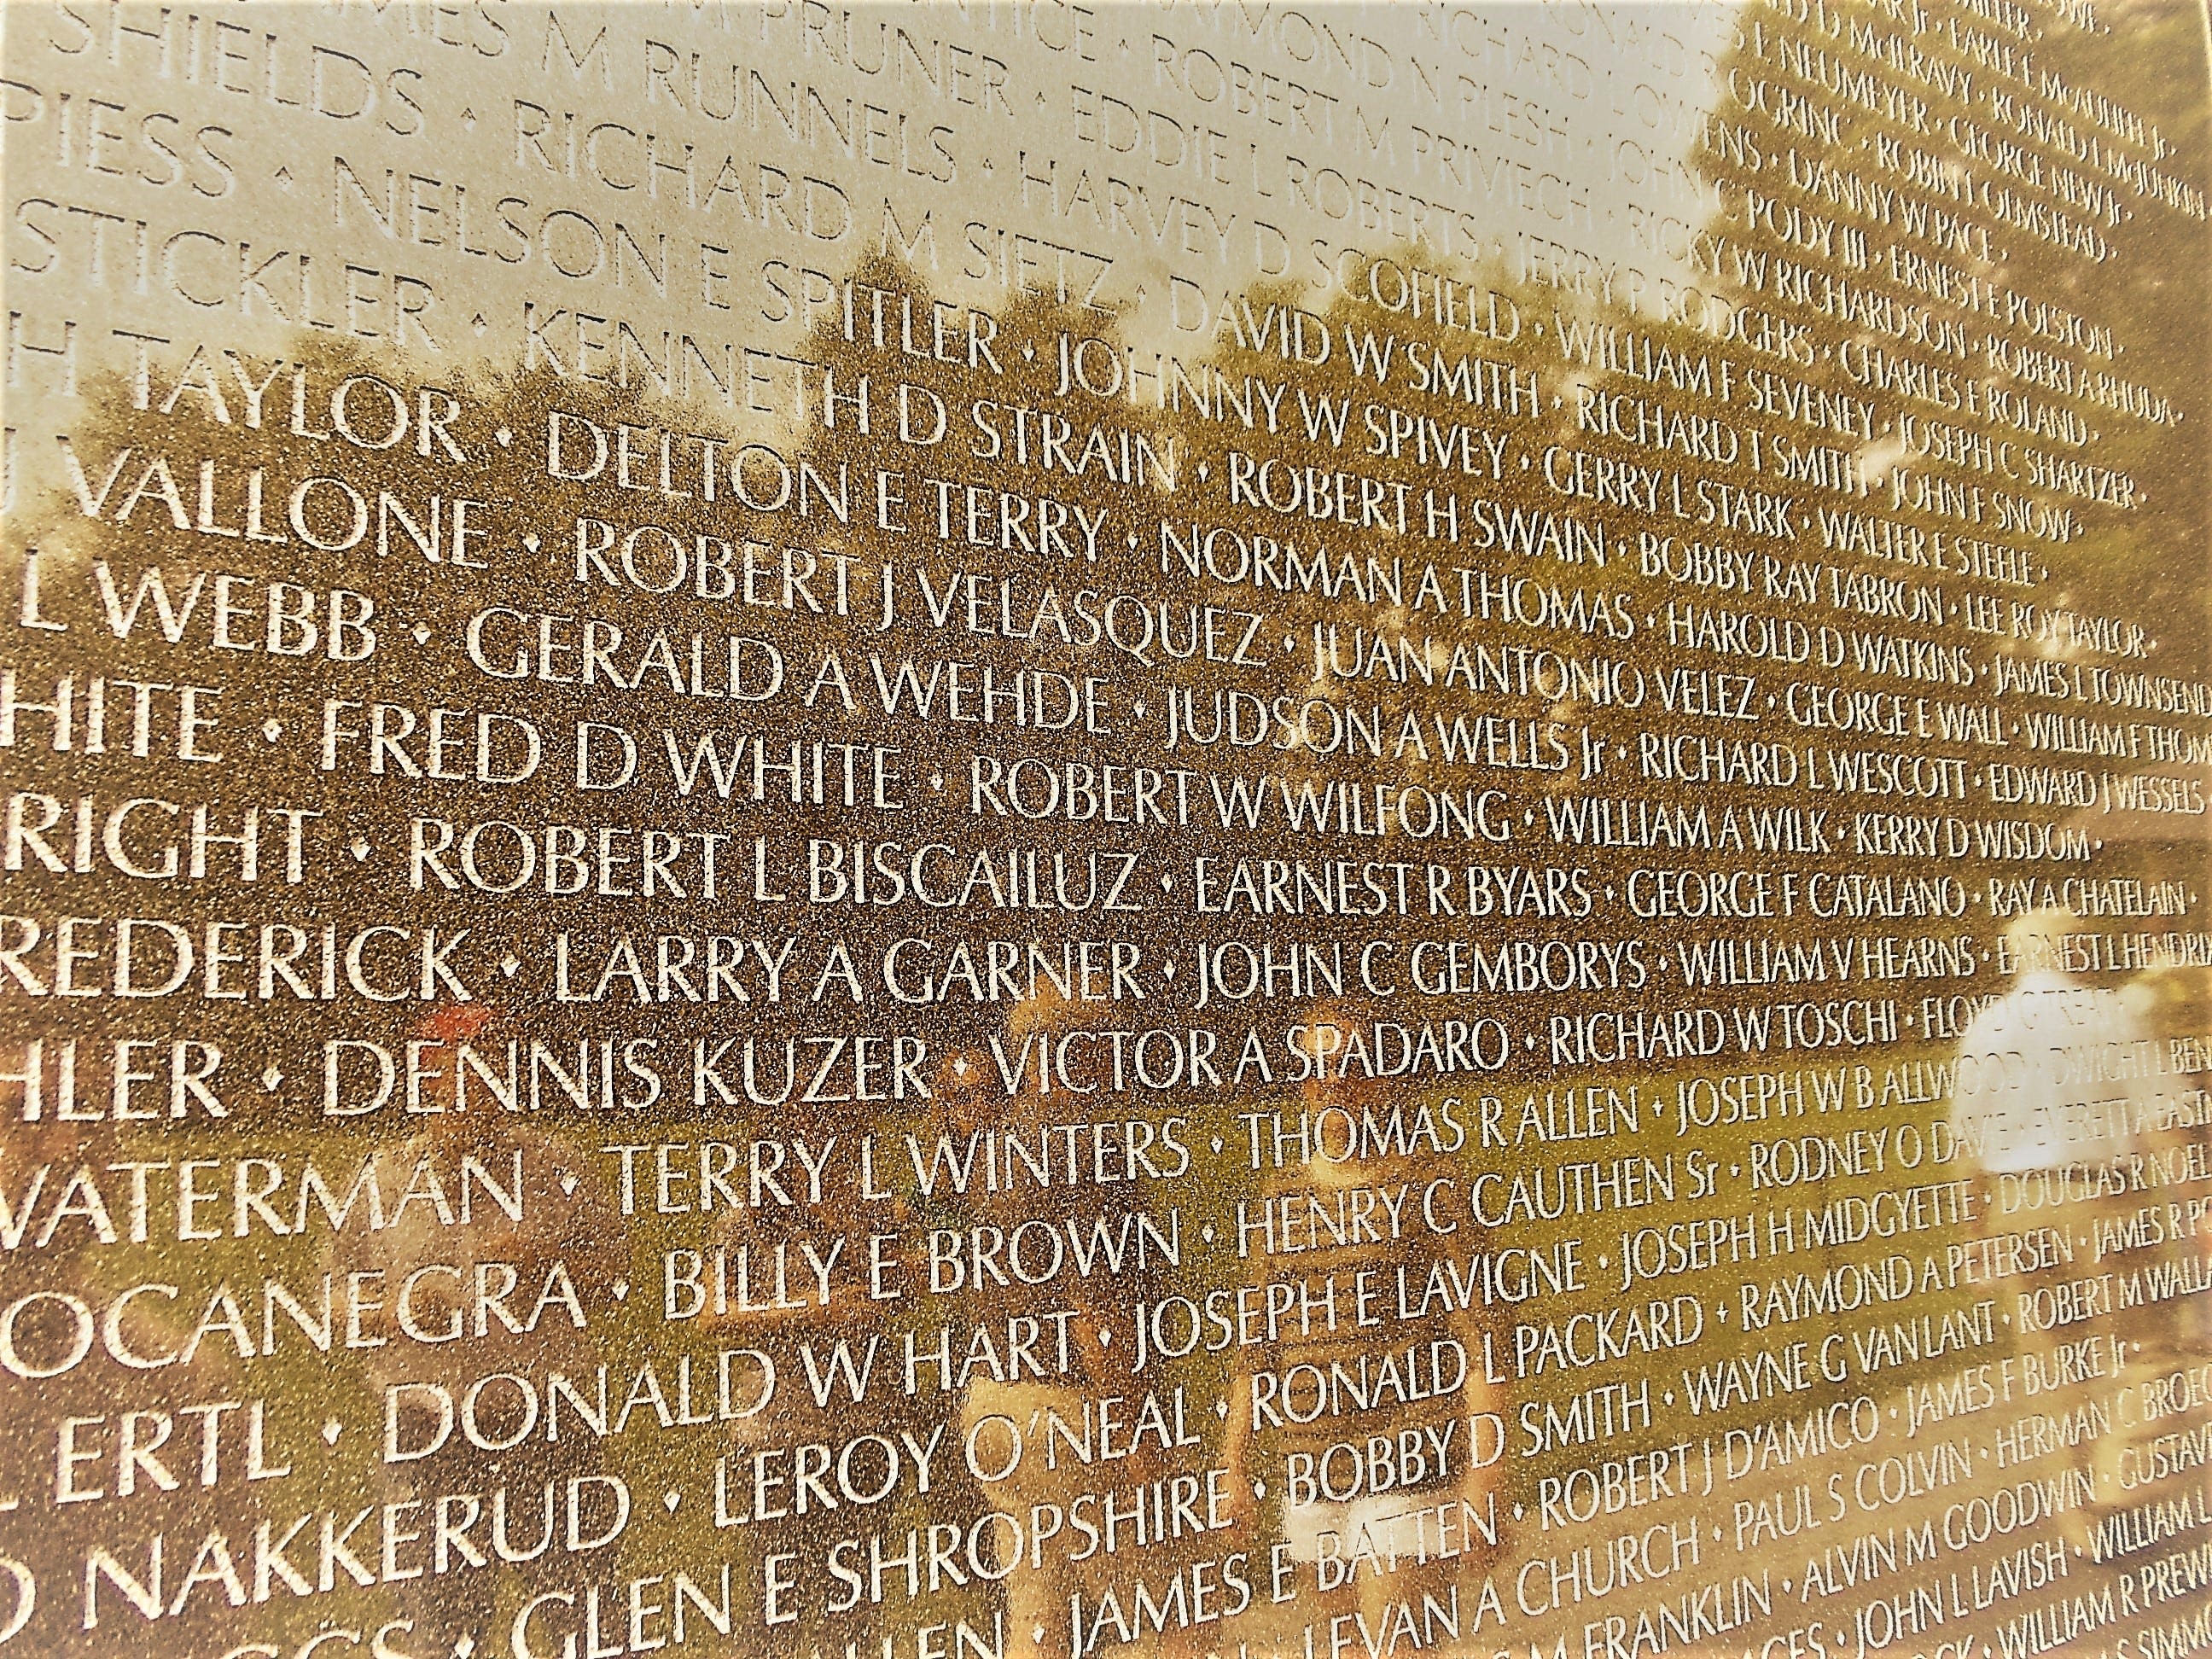 Visiting the Vietnam Veterans Memorial brings back memories of fallen this Memorial Day